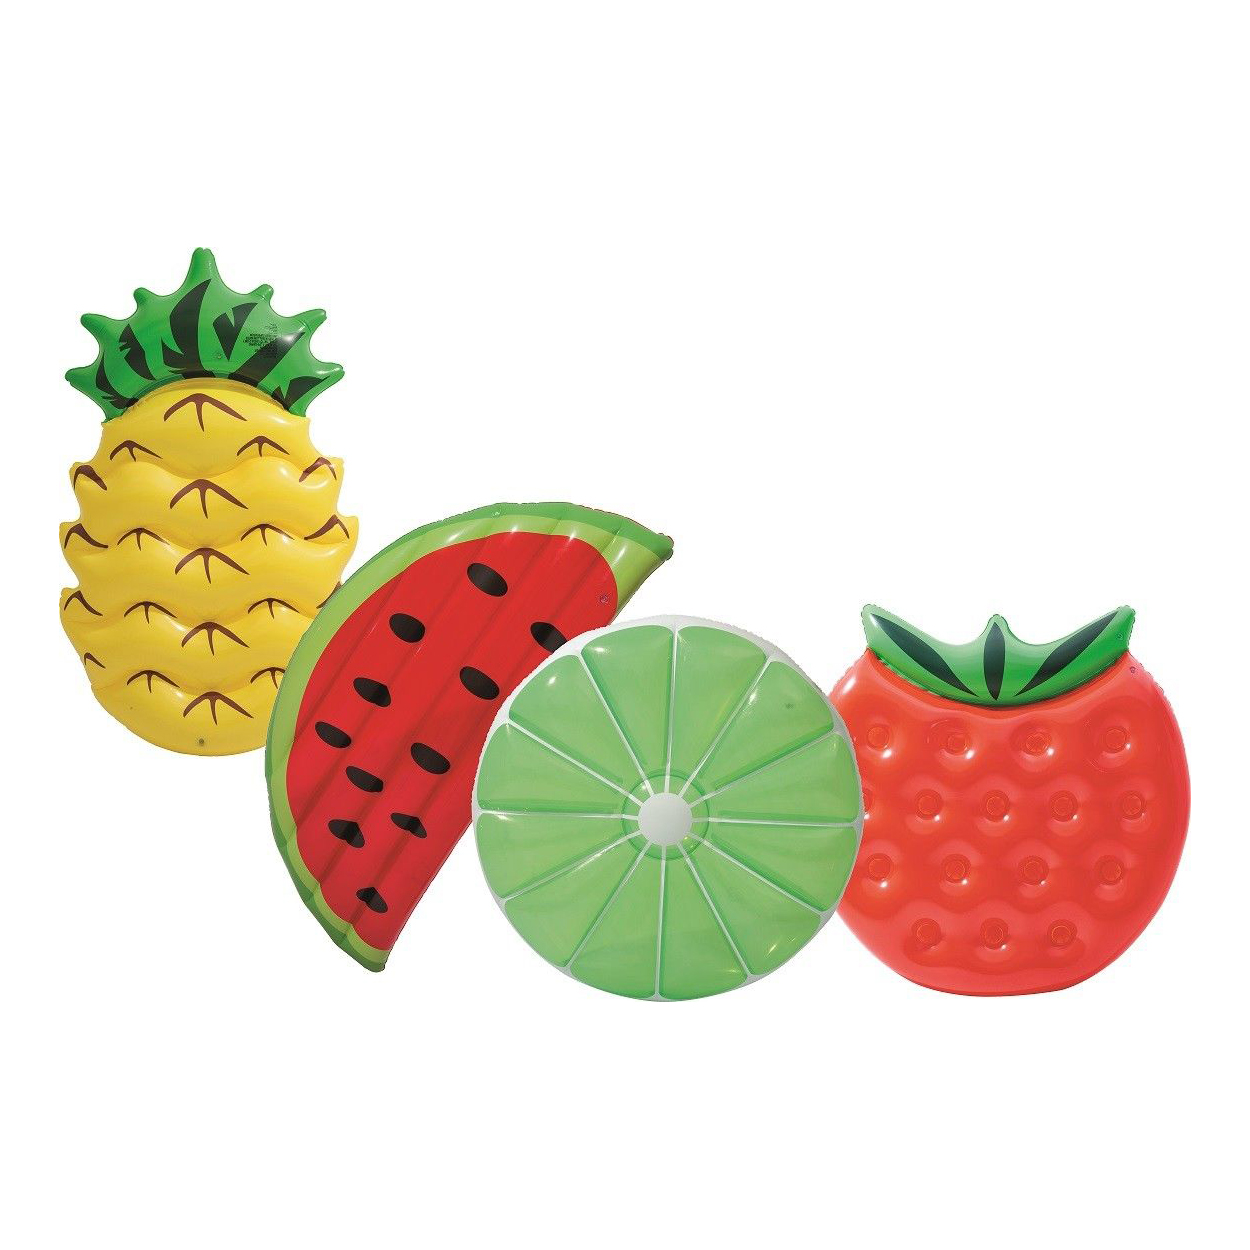 Gonfiabile frutti estivi assortiti 174x96 - 89 cm